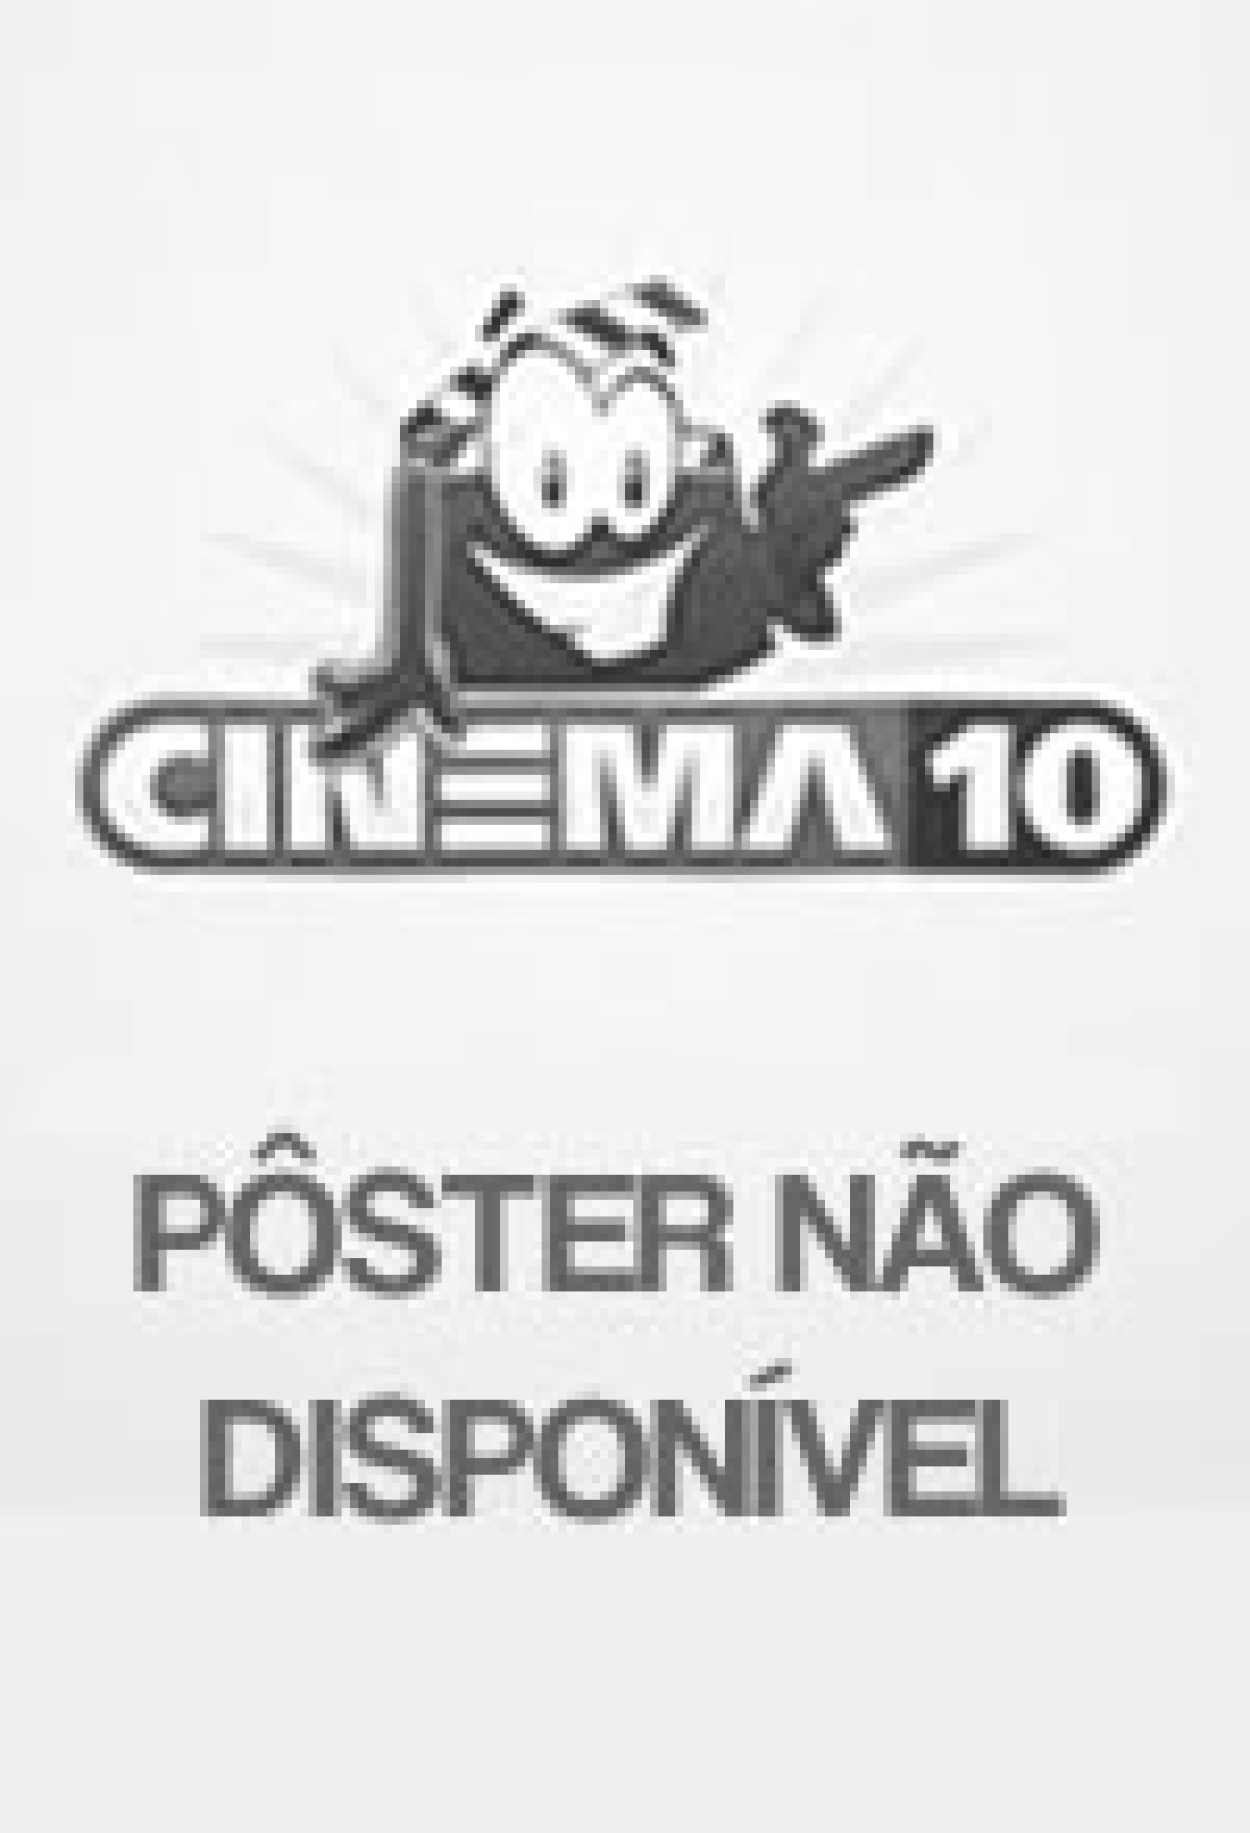 Os Cavaleiros do Zodíaco - O Filme (Filme), Trailer, Sinopse e Curiosidades  - Cinema10